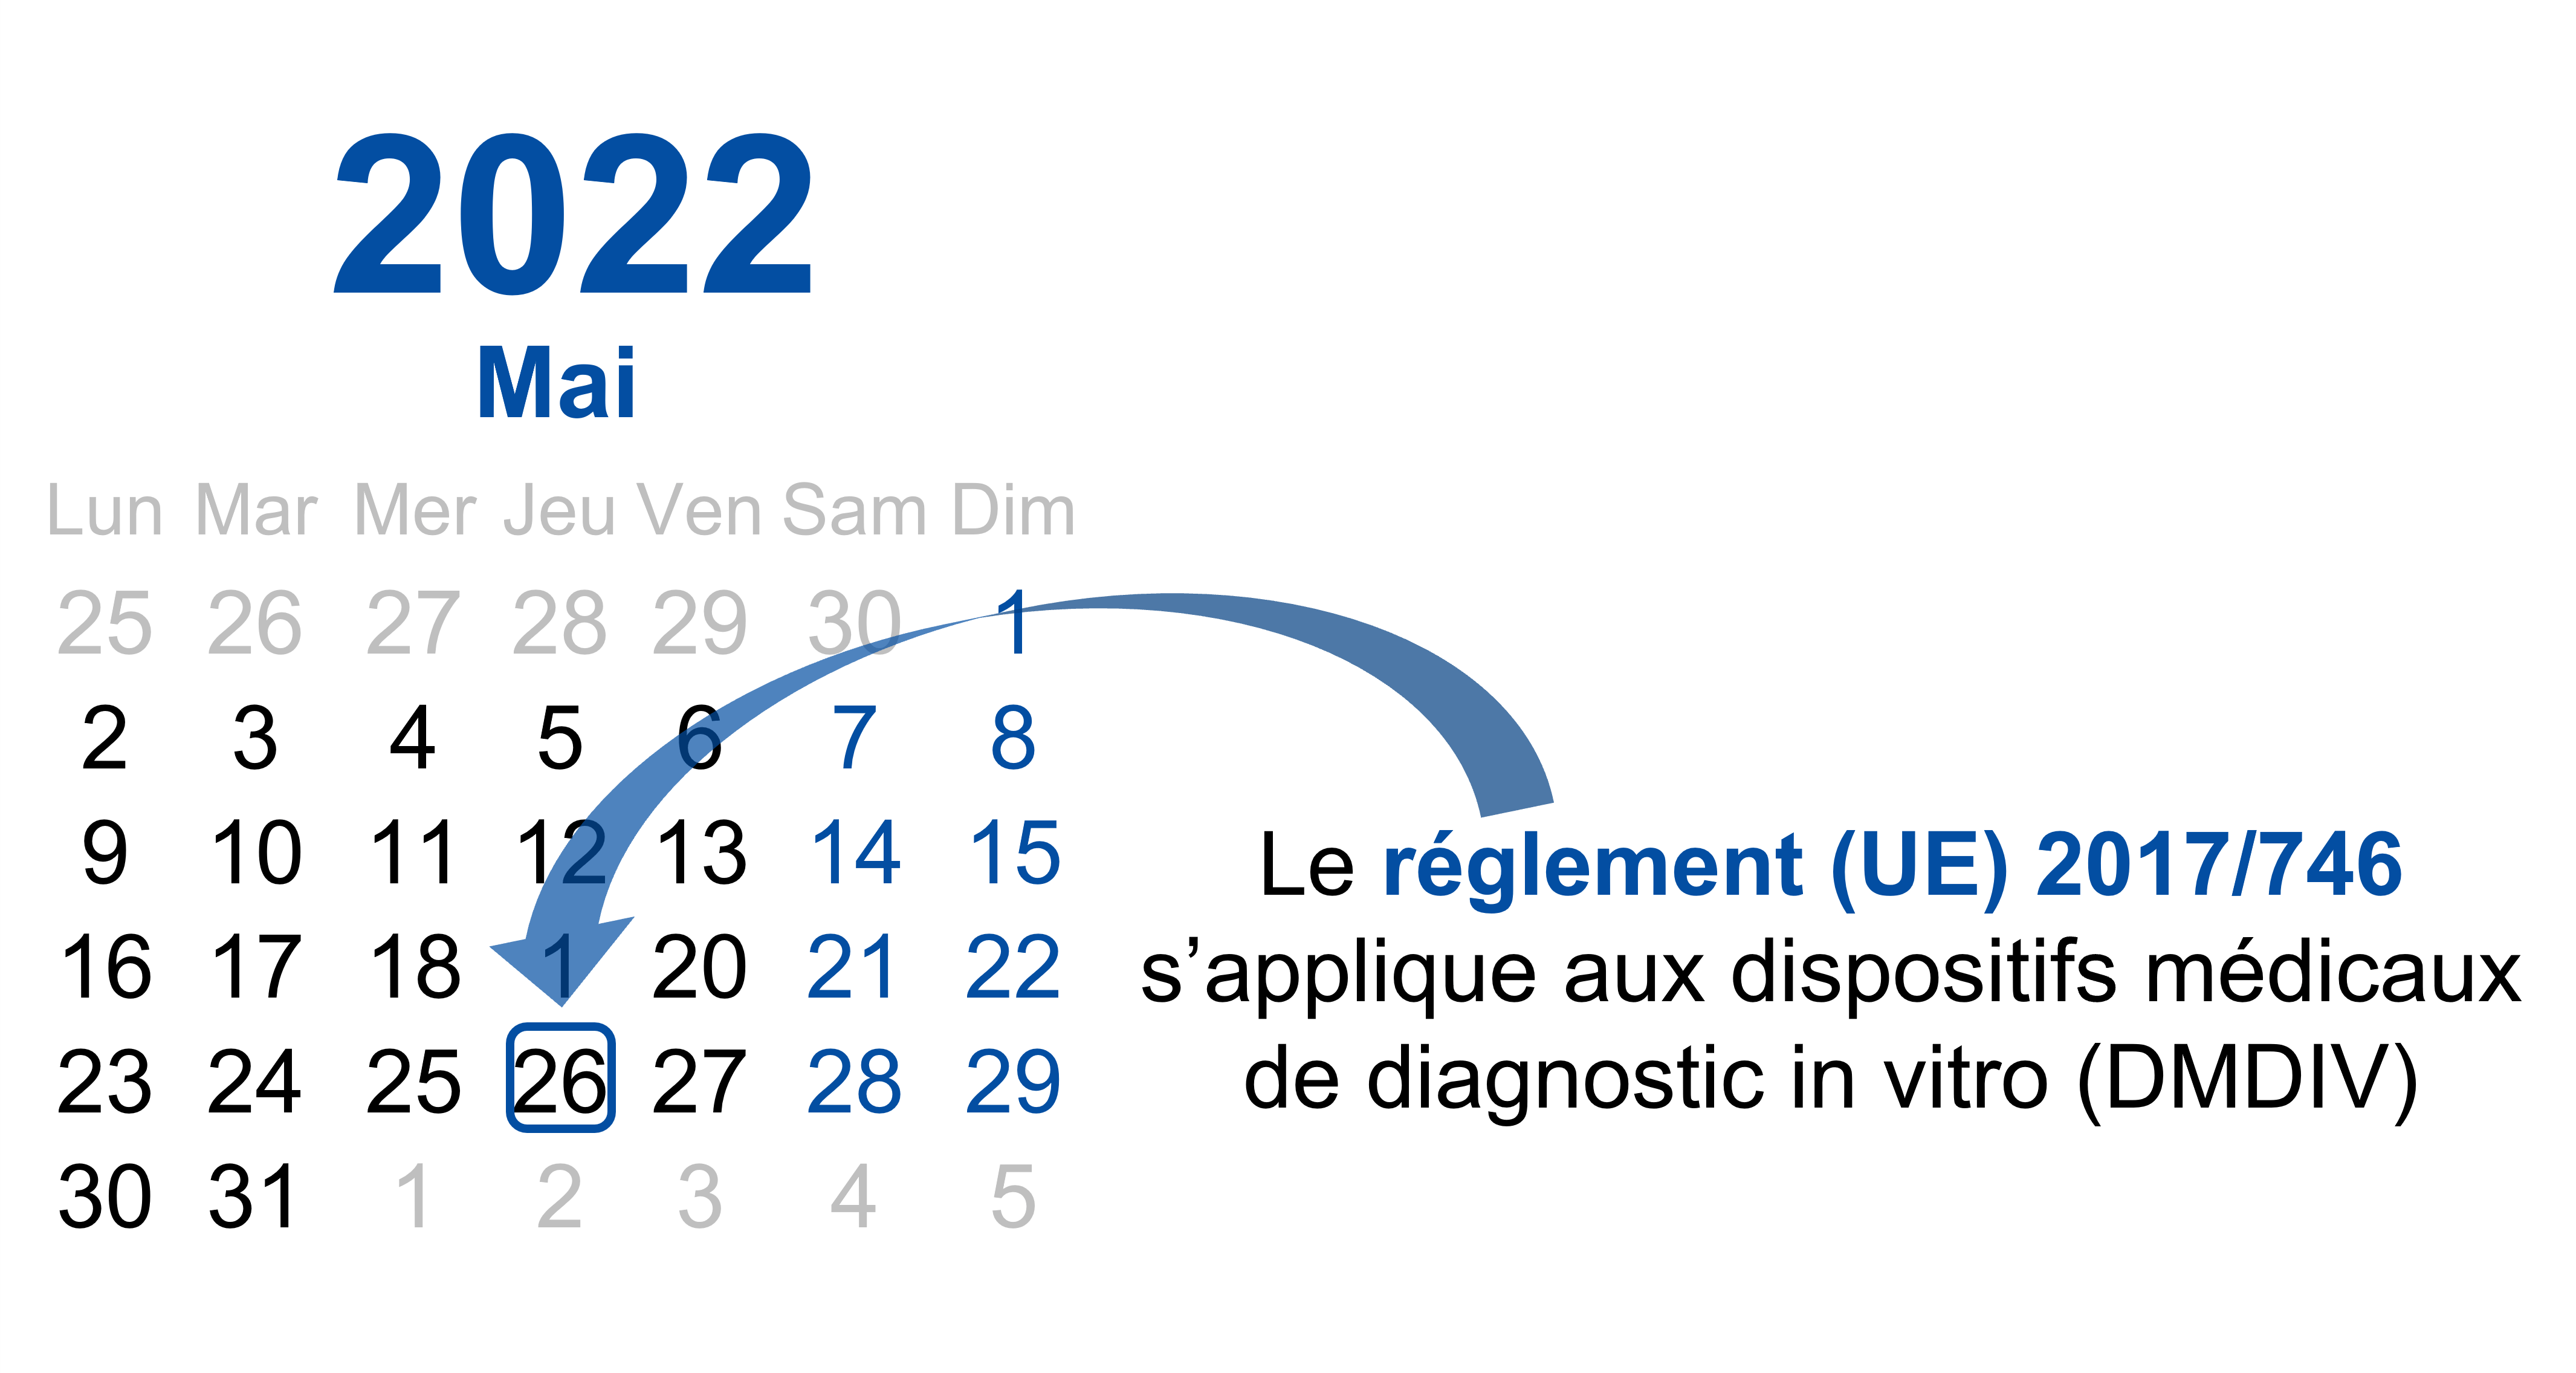 Réglement (UE) 2017/746